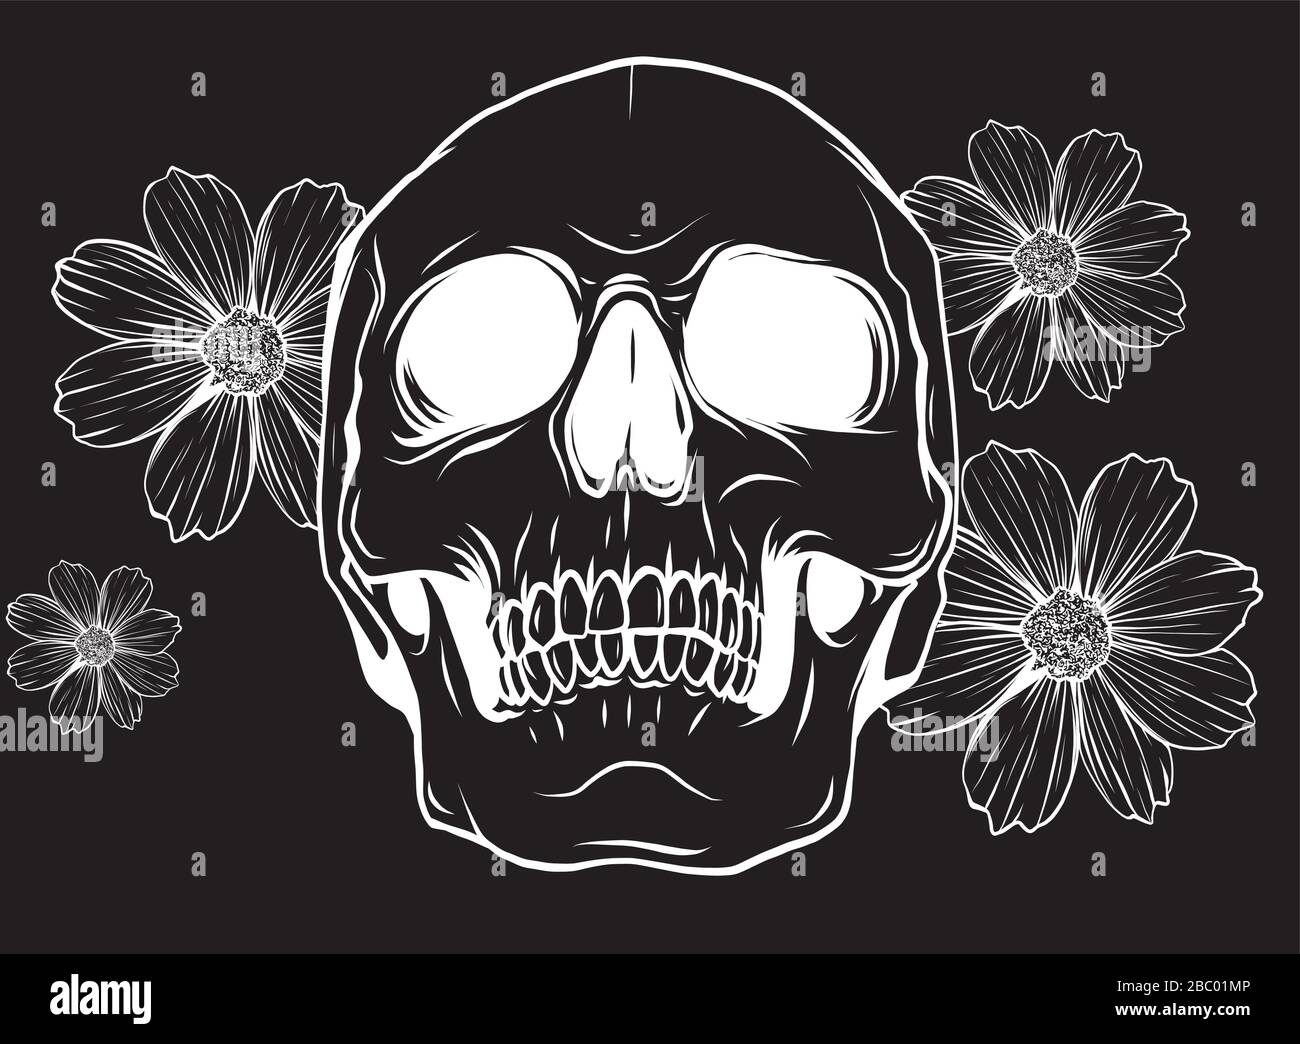 Calavera con flores Imágenes de stock en blanco y negro - Página 2 - Alamy